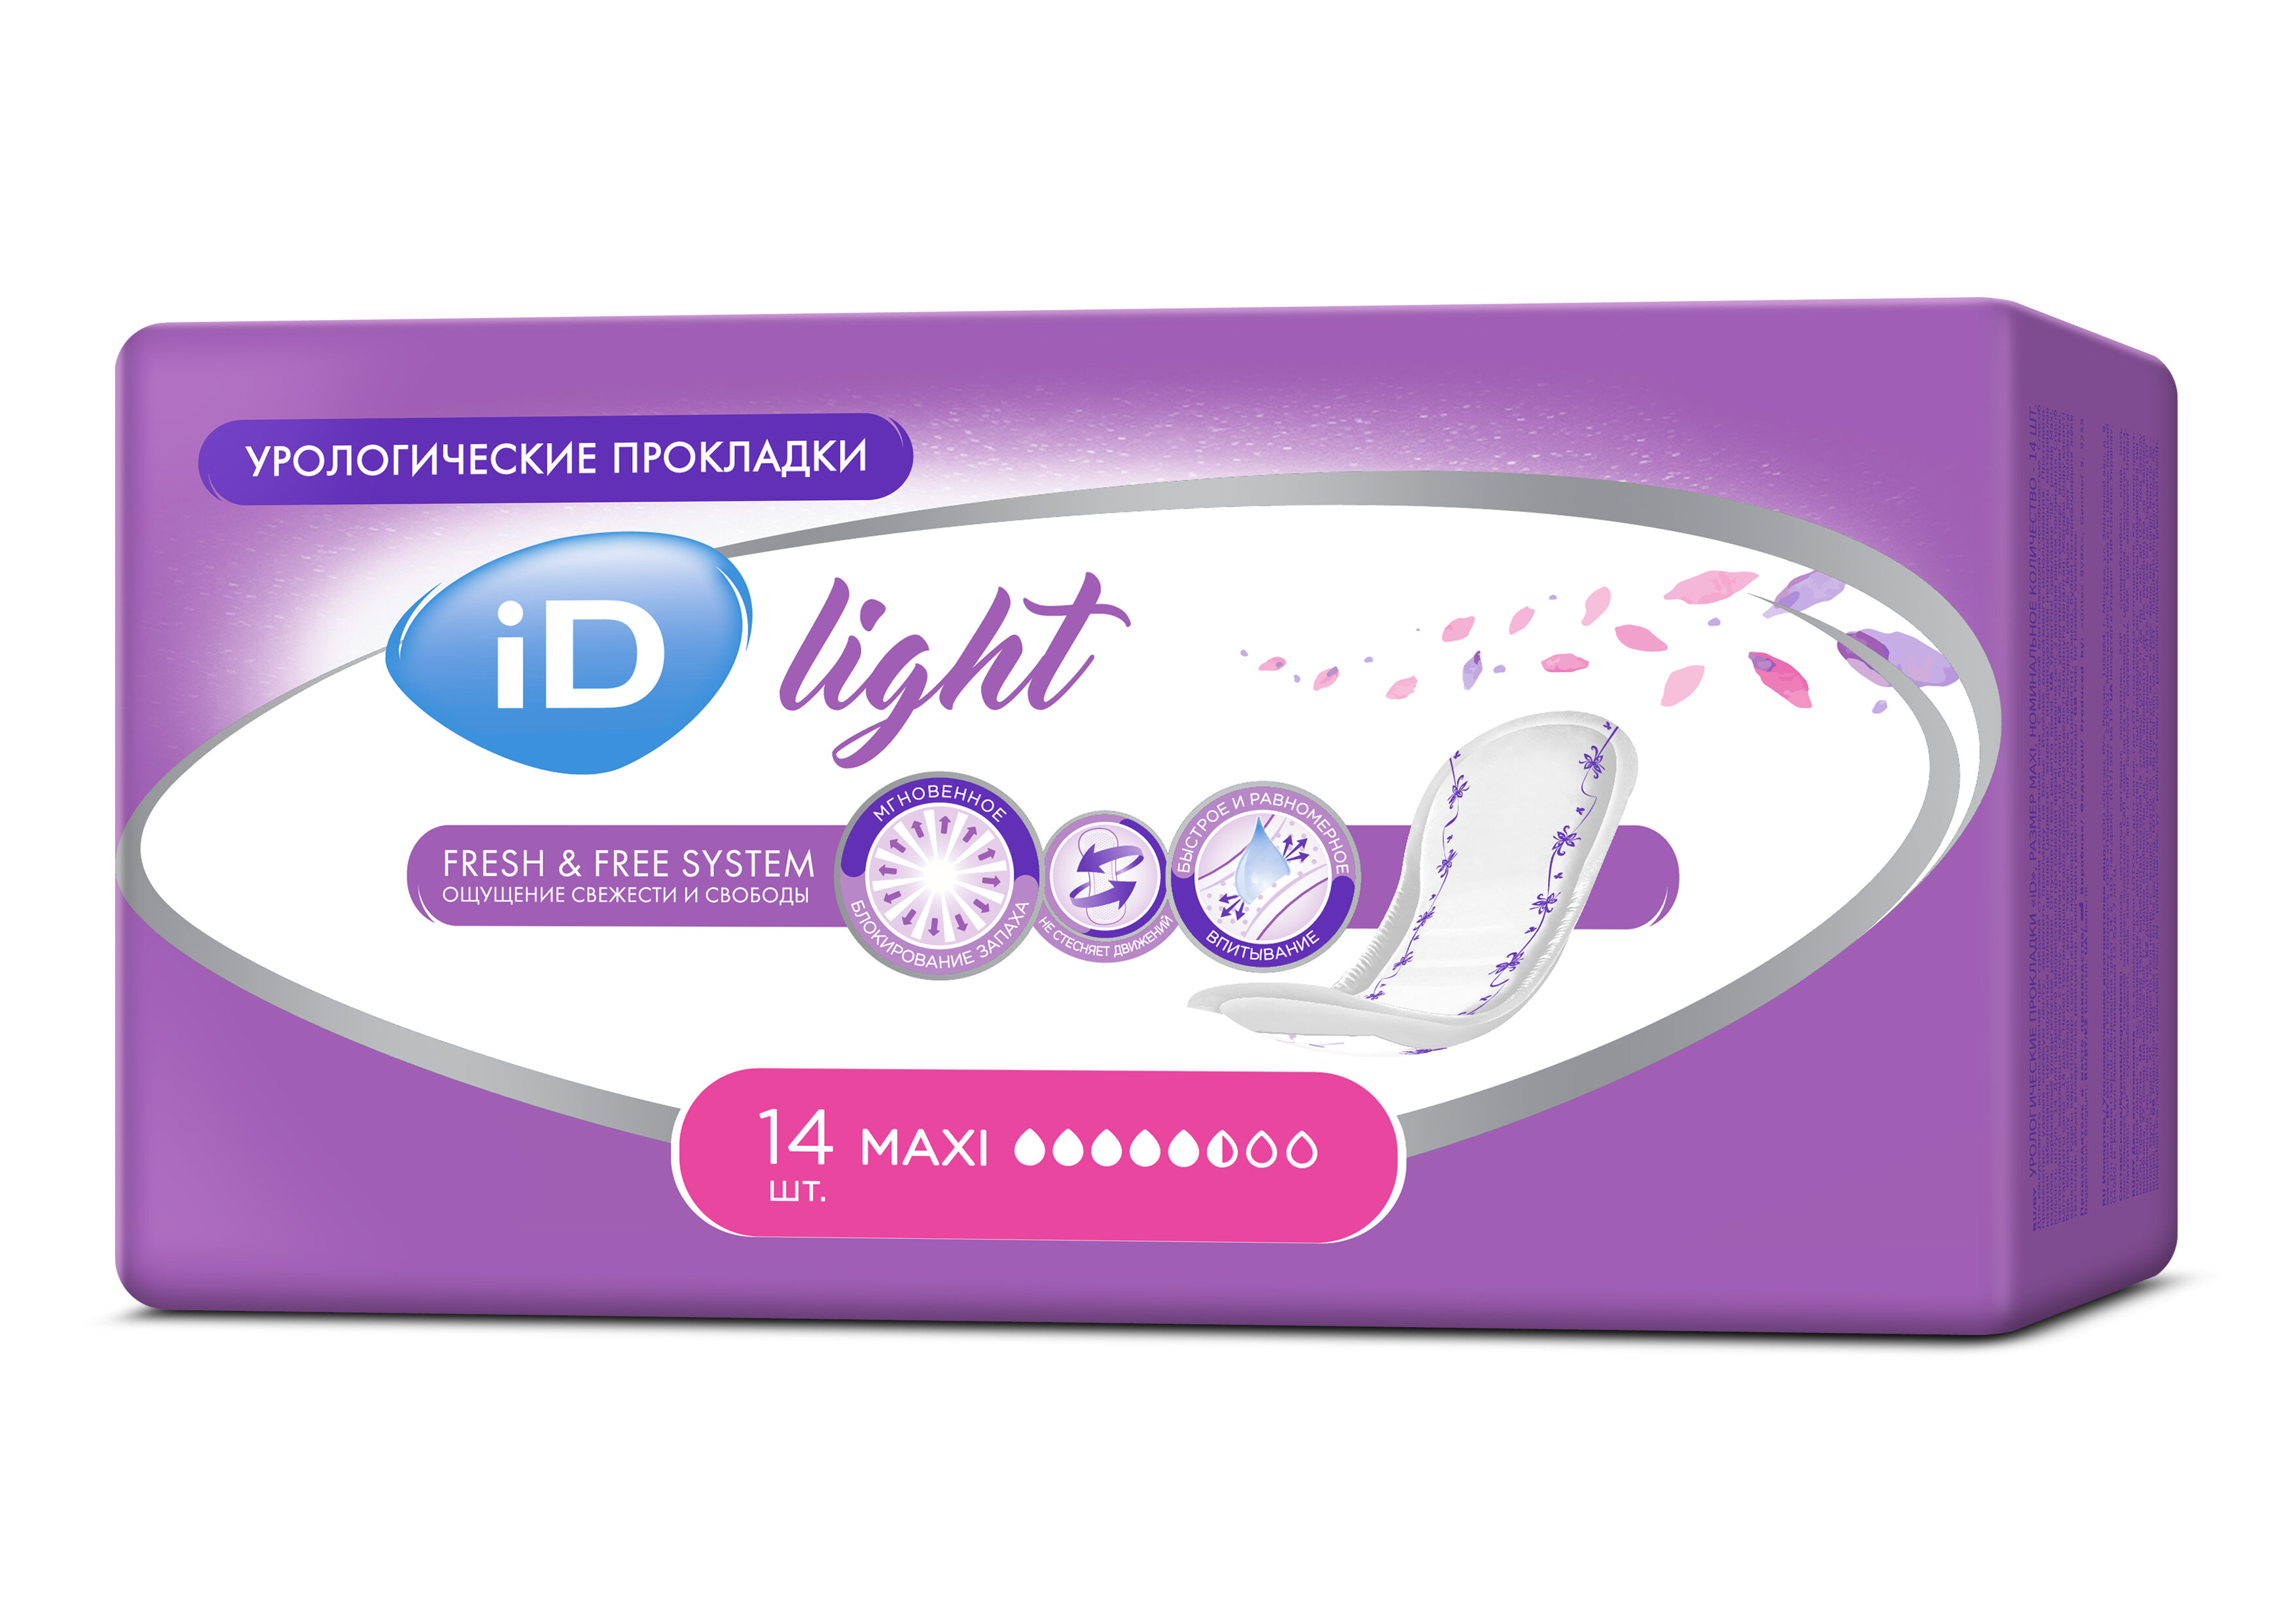 iD Light Maxi / АйДи Лайт Макси - урологические прокладки для женщин, 14 шт.